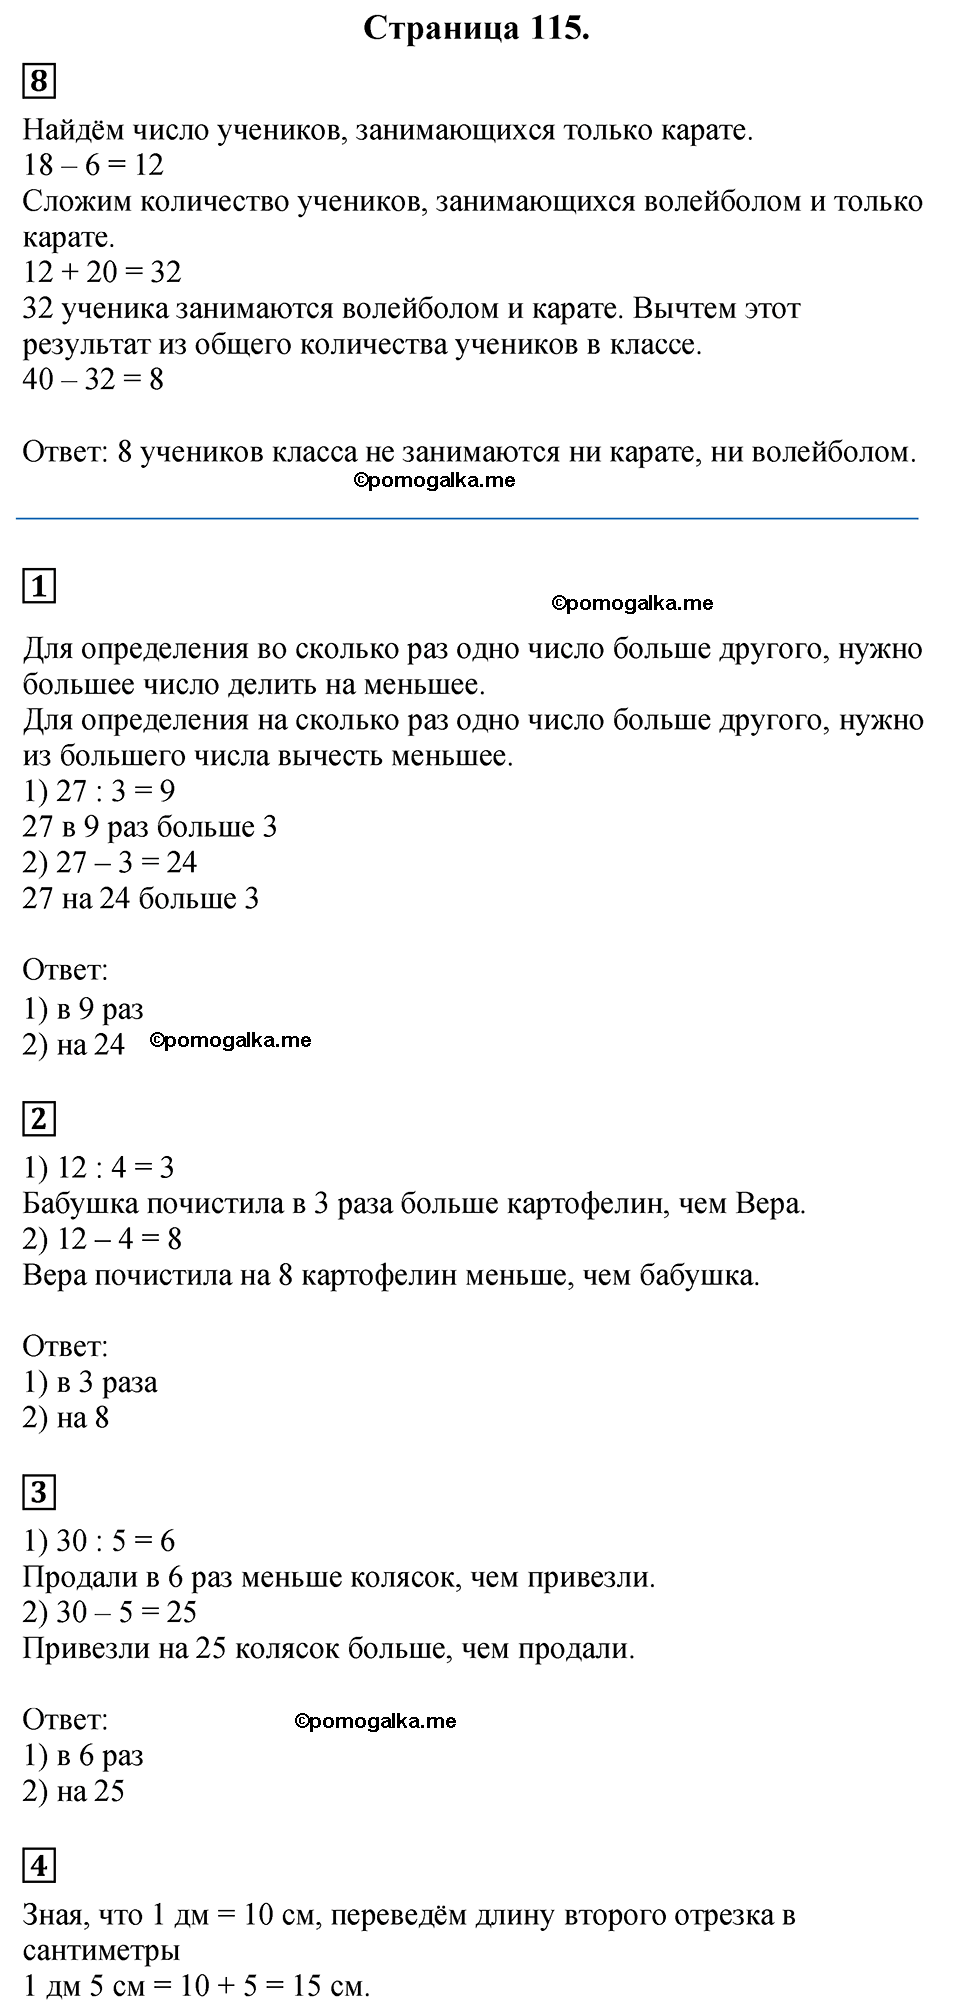 Страница №115 Часть 1 математика 3 класс Дорофеев